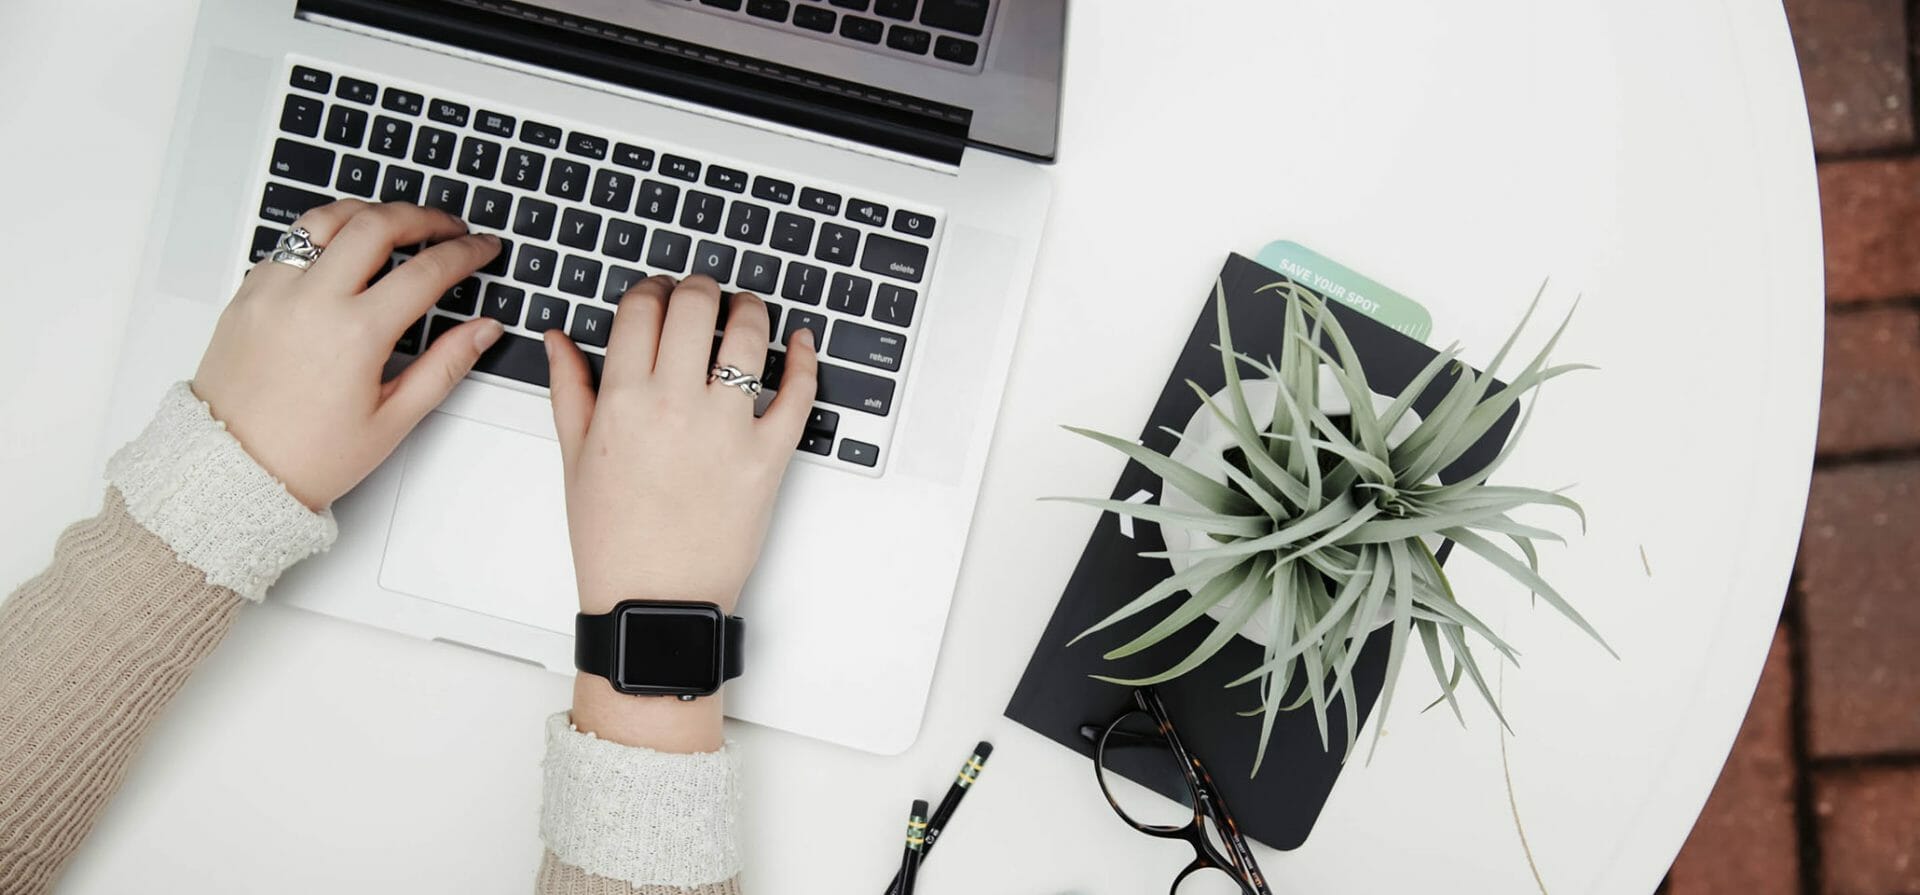 Een persoon met een smartwatch en ringen, werkt aan een LMS op een witte tafel met een laptop, een plant, een bril en twee pennen.